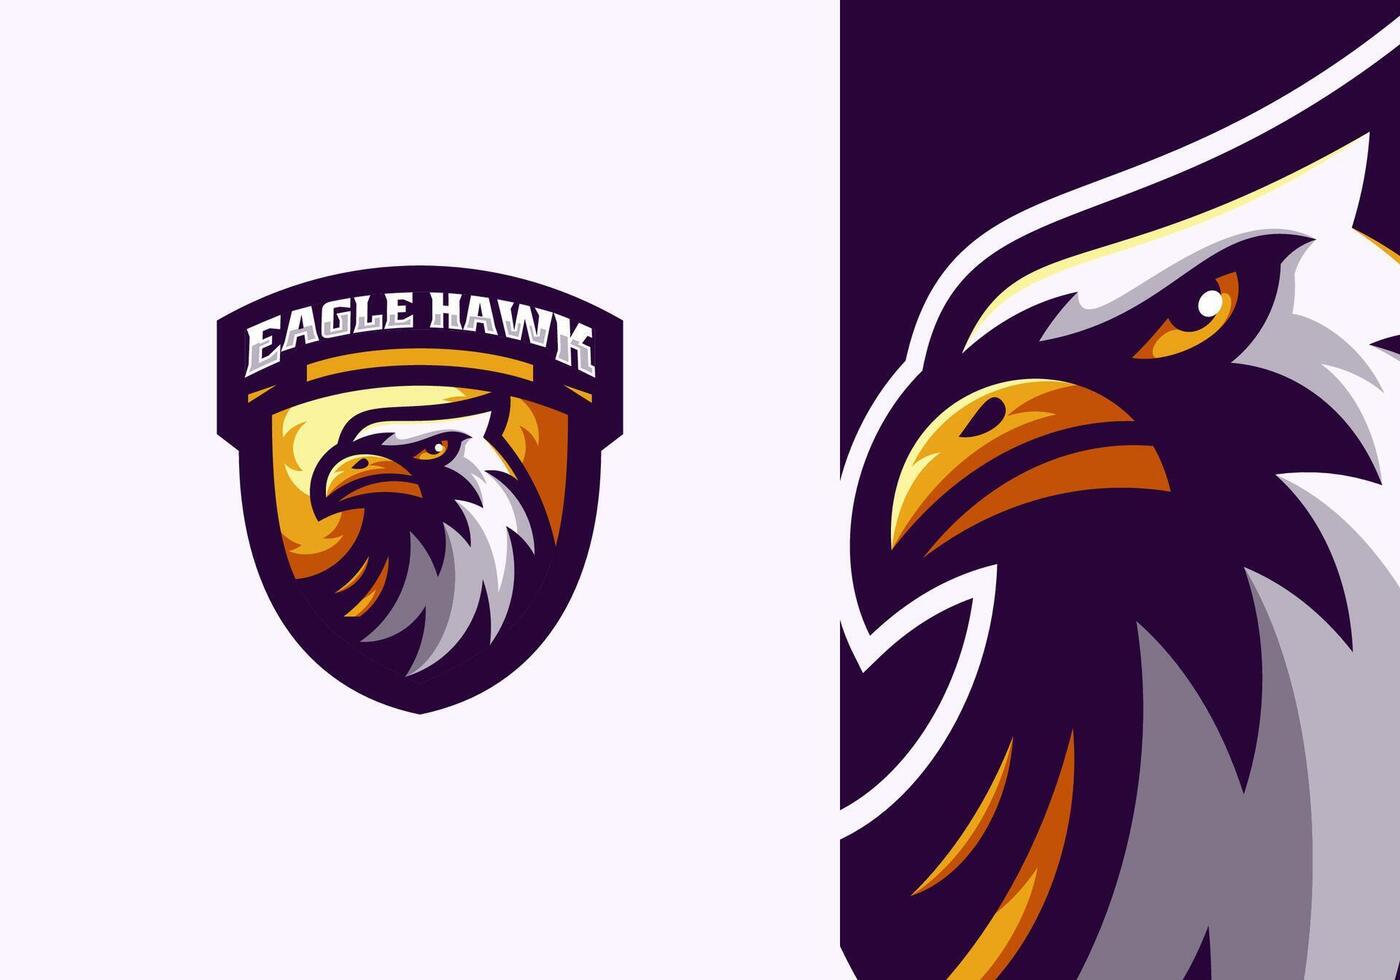 Eagle mascot logo vector